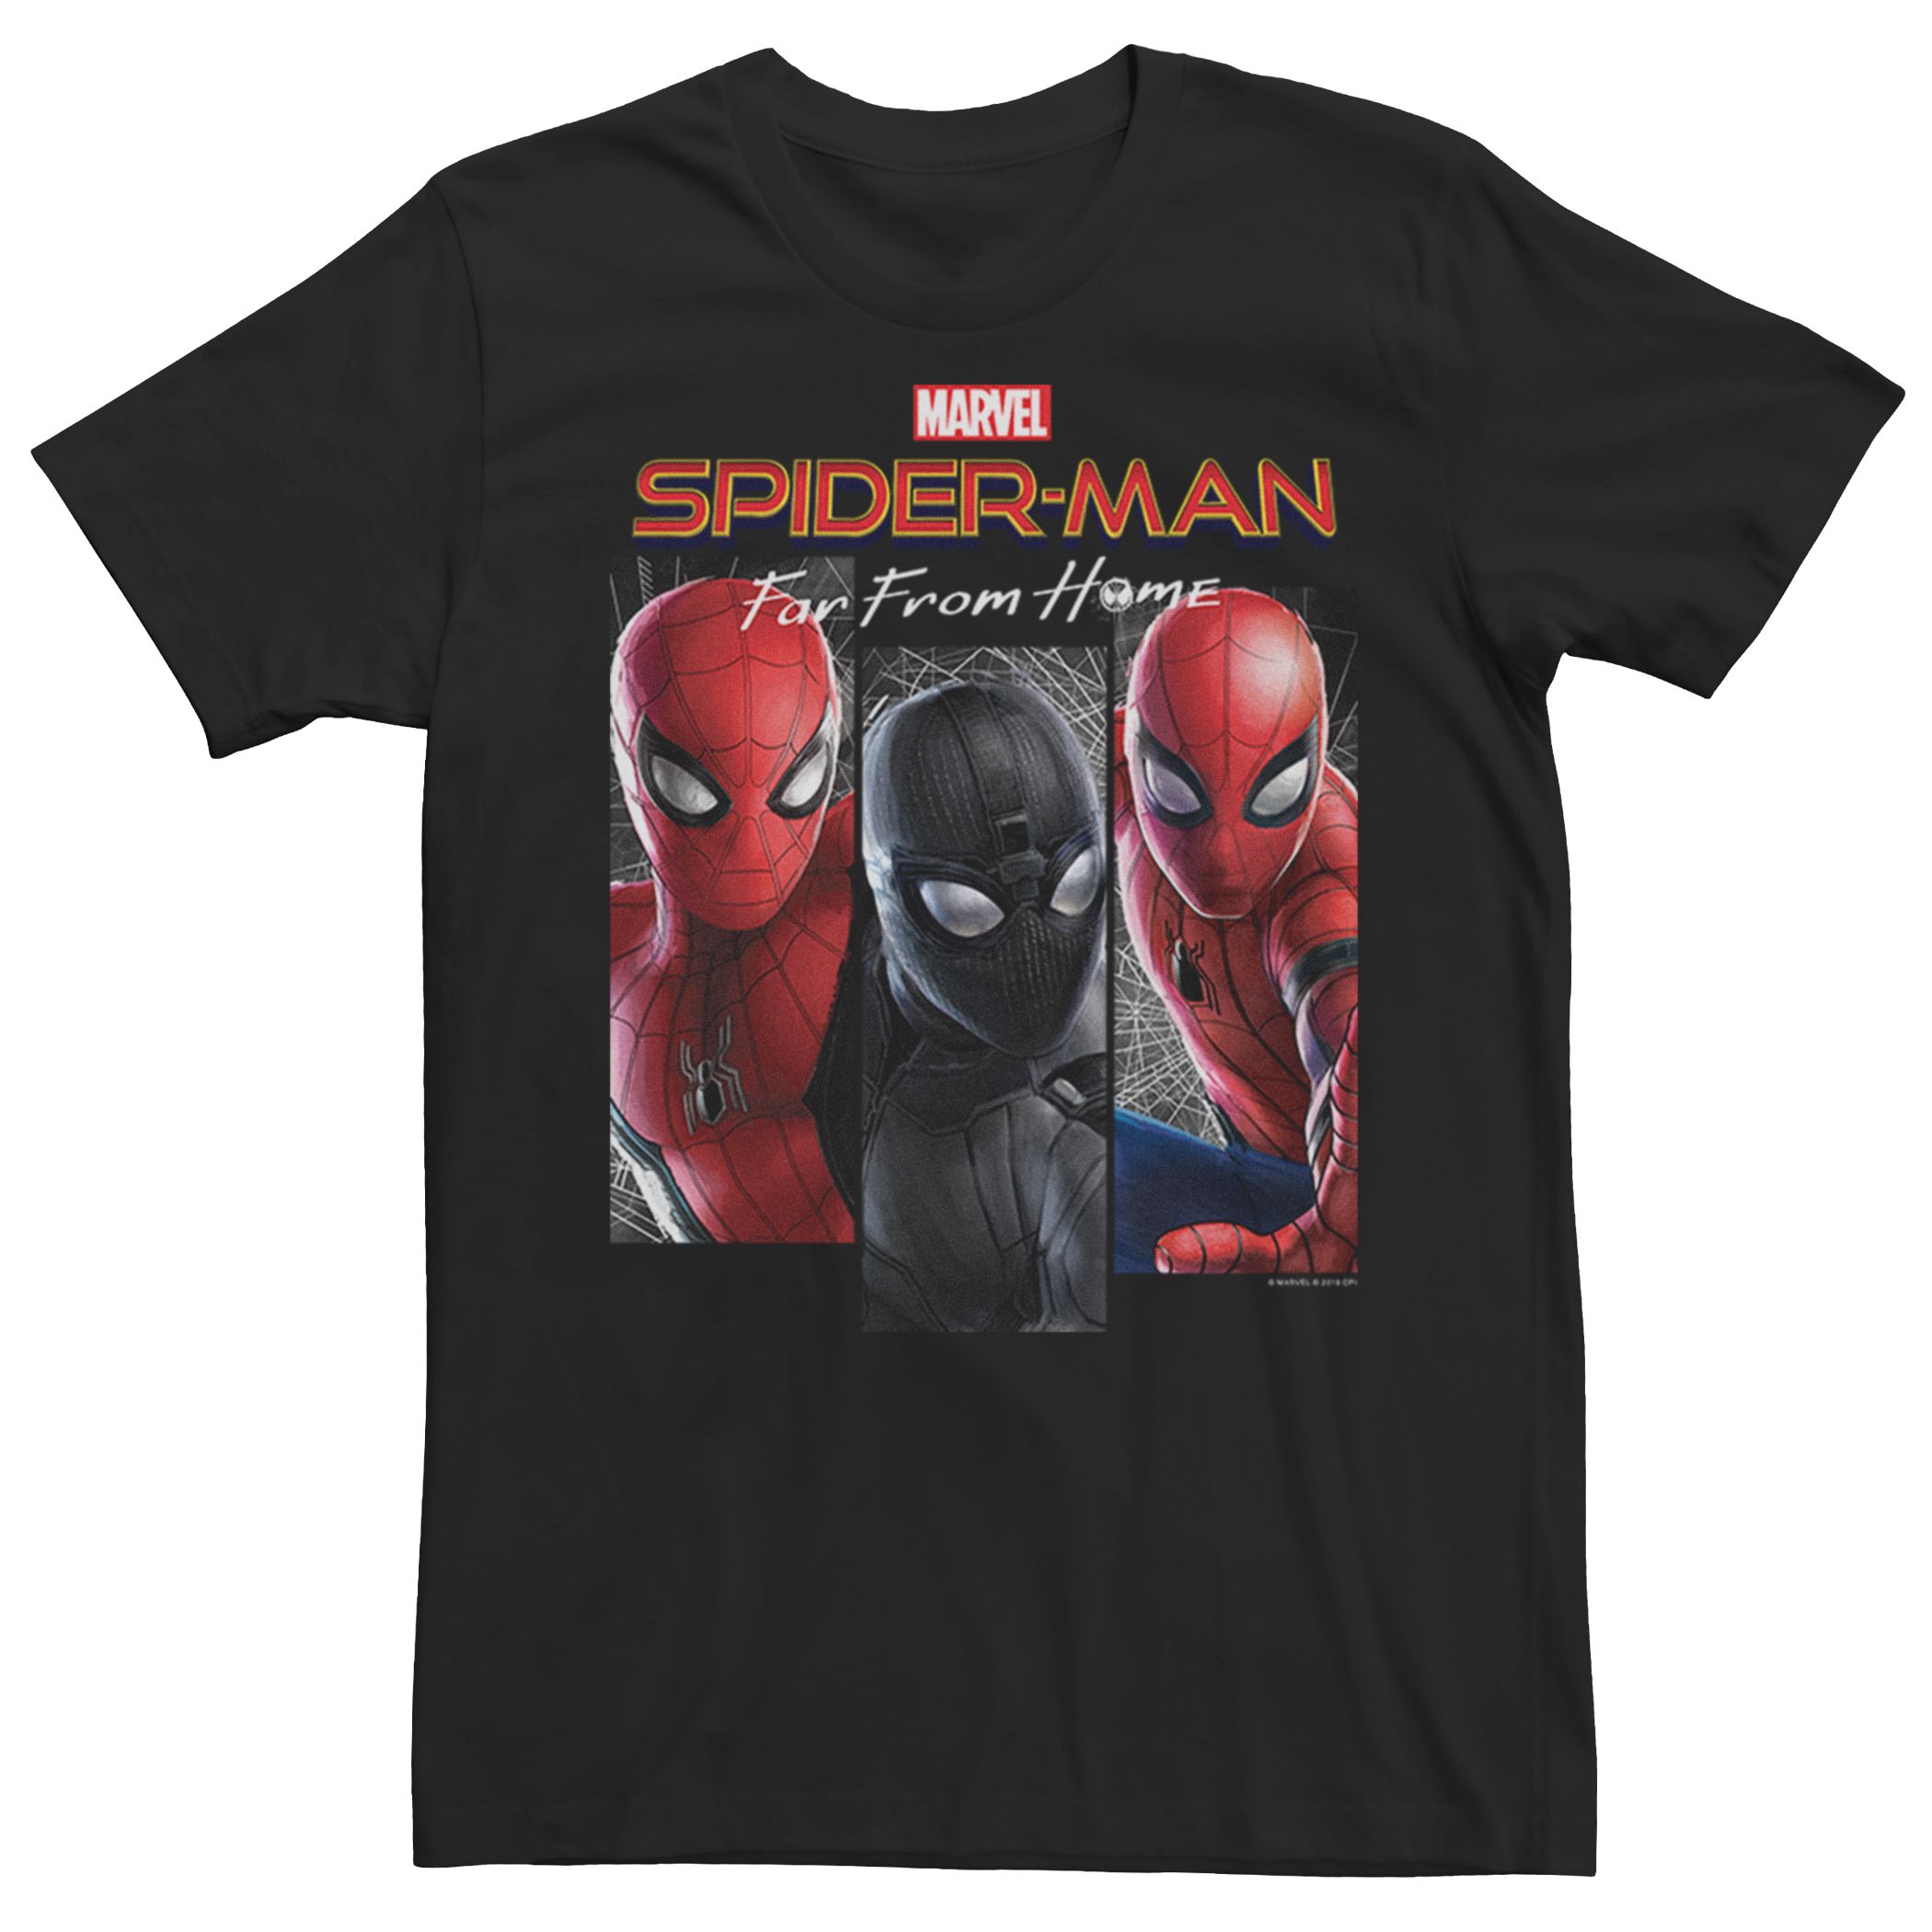 Мужская футболка с вставкой «Человек-паук вдали от дома» Marvel